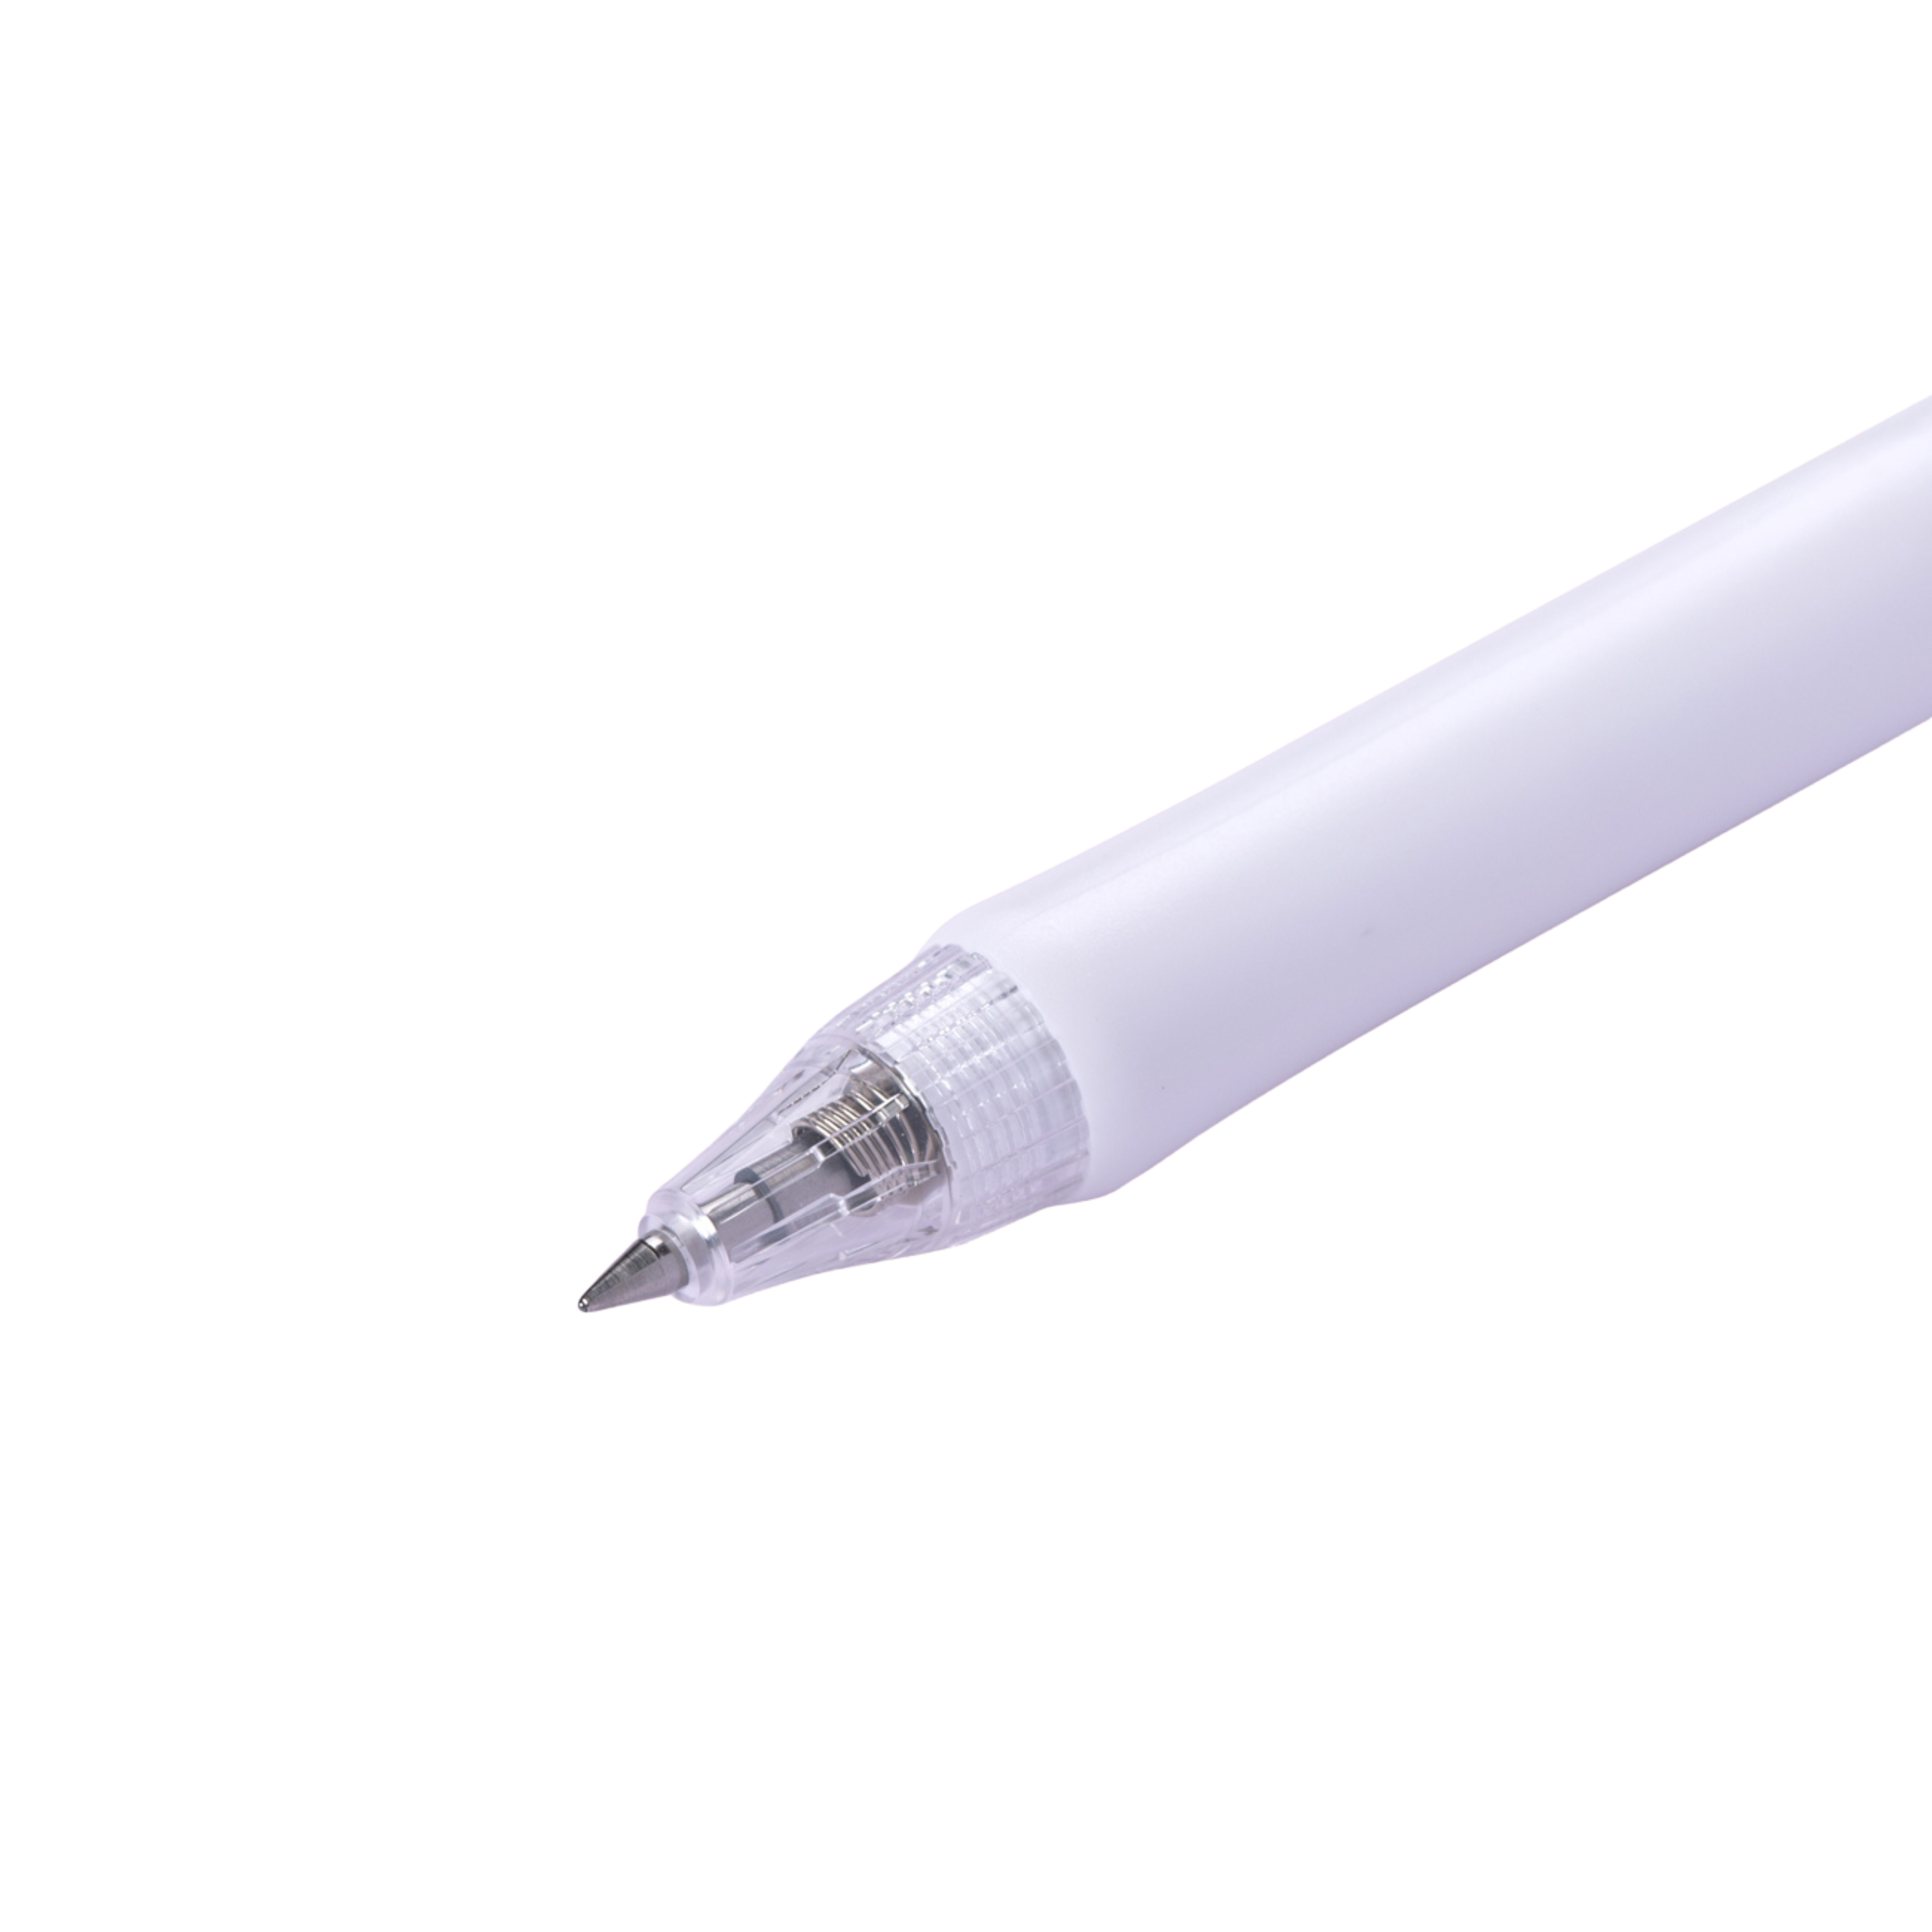 Kokuyo Campus viviDRY Retractable Gel Pen - 0.5 mm - Black